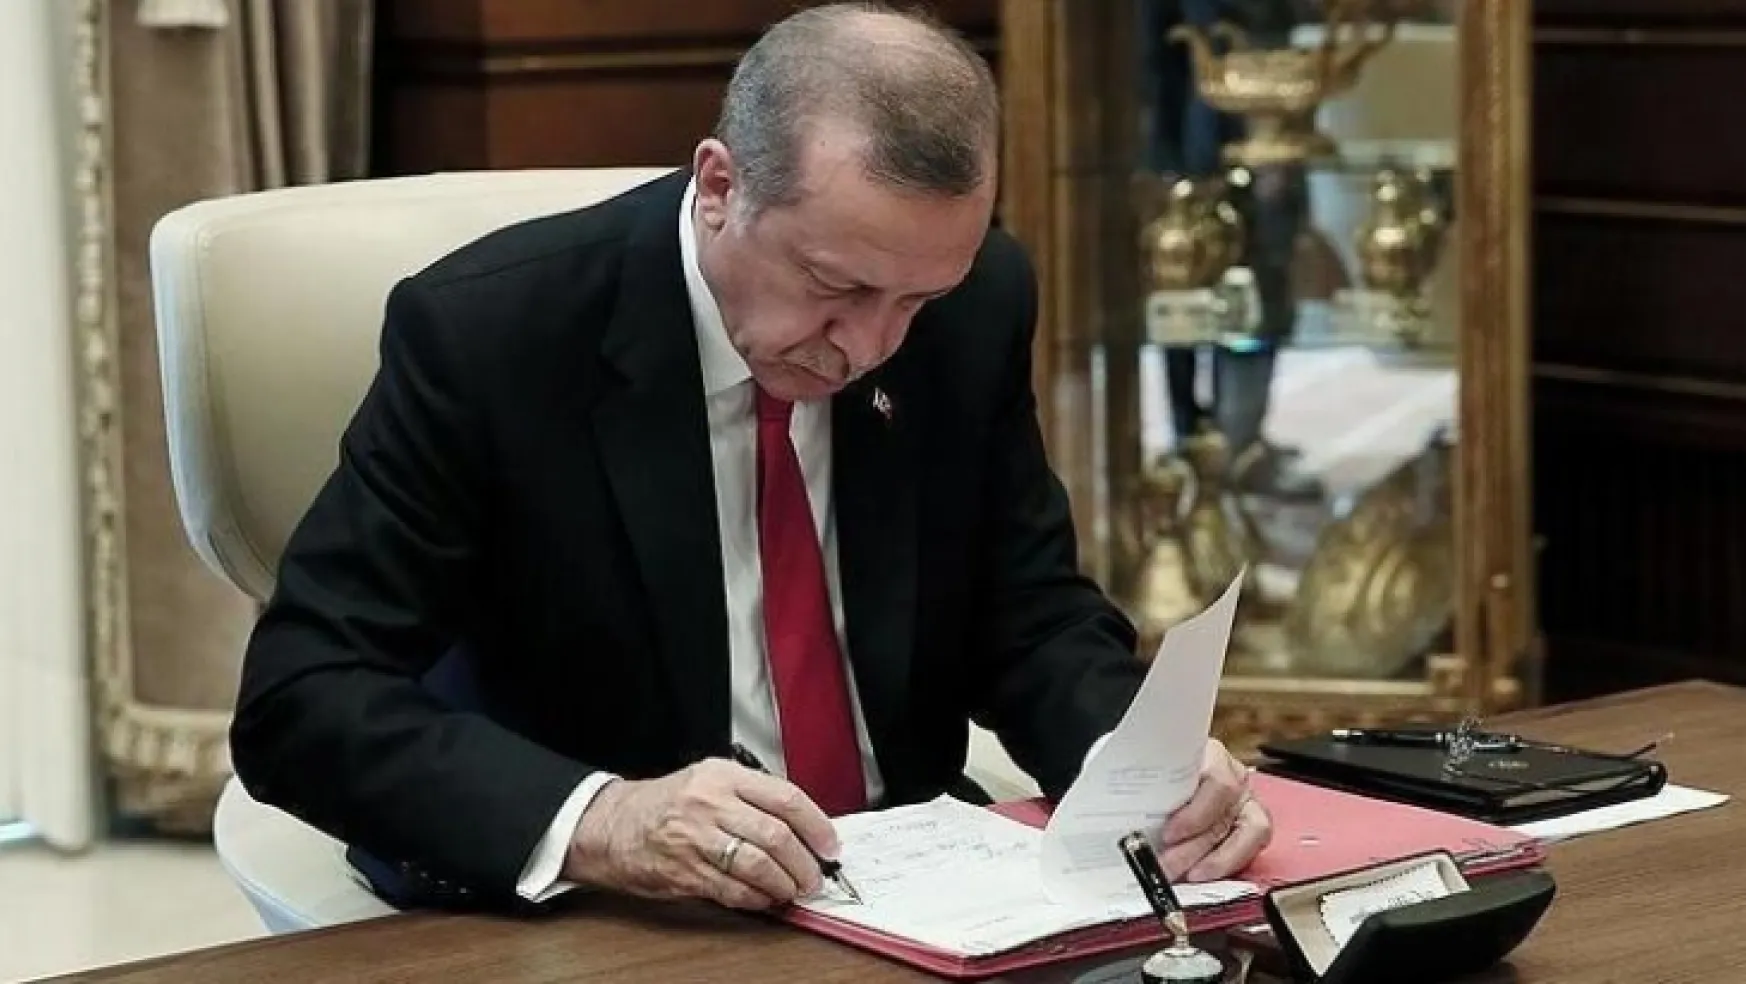 Kamuya yeni kadro! Cumhurbaşkanı Erdoğan imzaladı